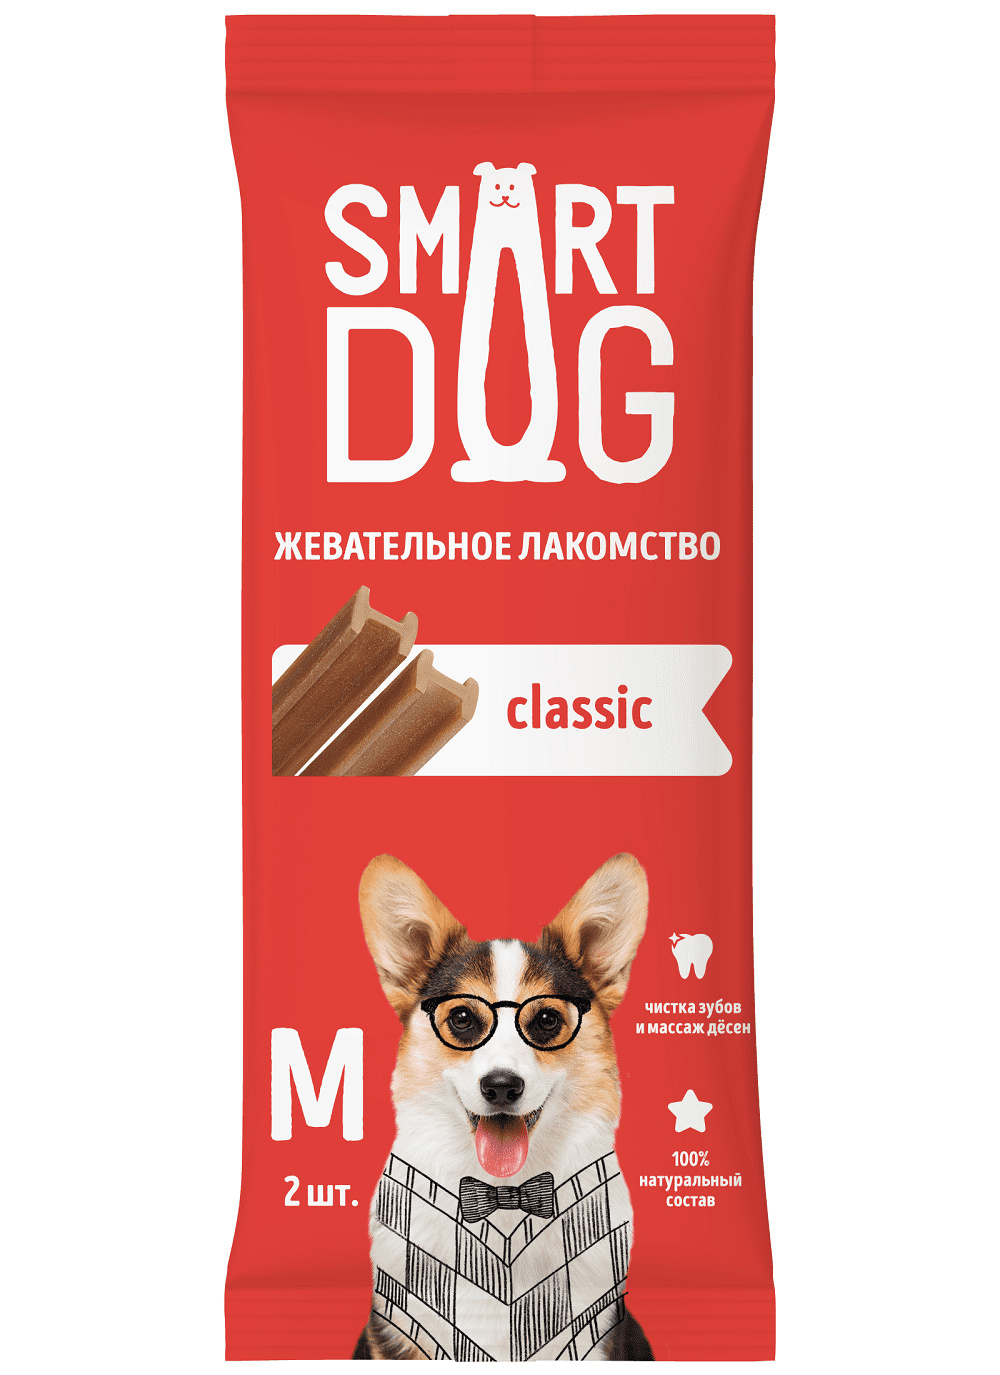 Smart Dog лакомства Smart Dog лакомства жевательное лакомство с витаминами и минералами для собак и щенков (M) smart dog лакомства smart dog лакомства жевательное лакомство с омега 3 и 6 для собак и щенков 36 г